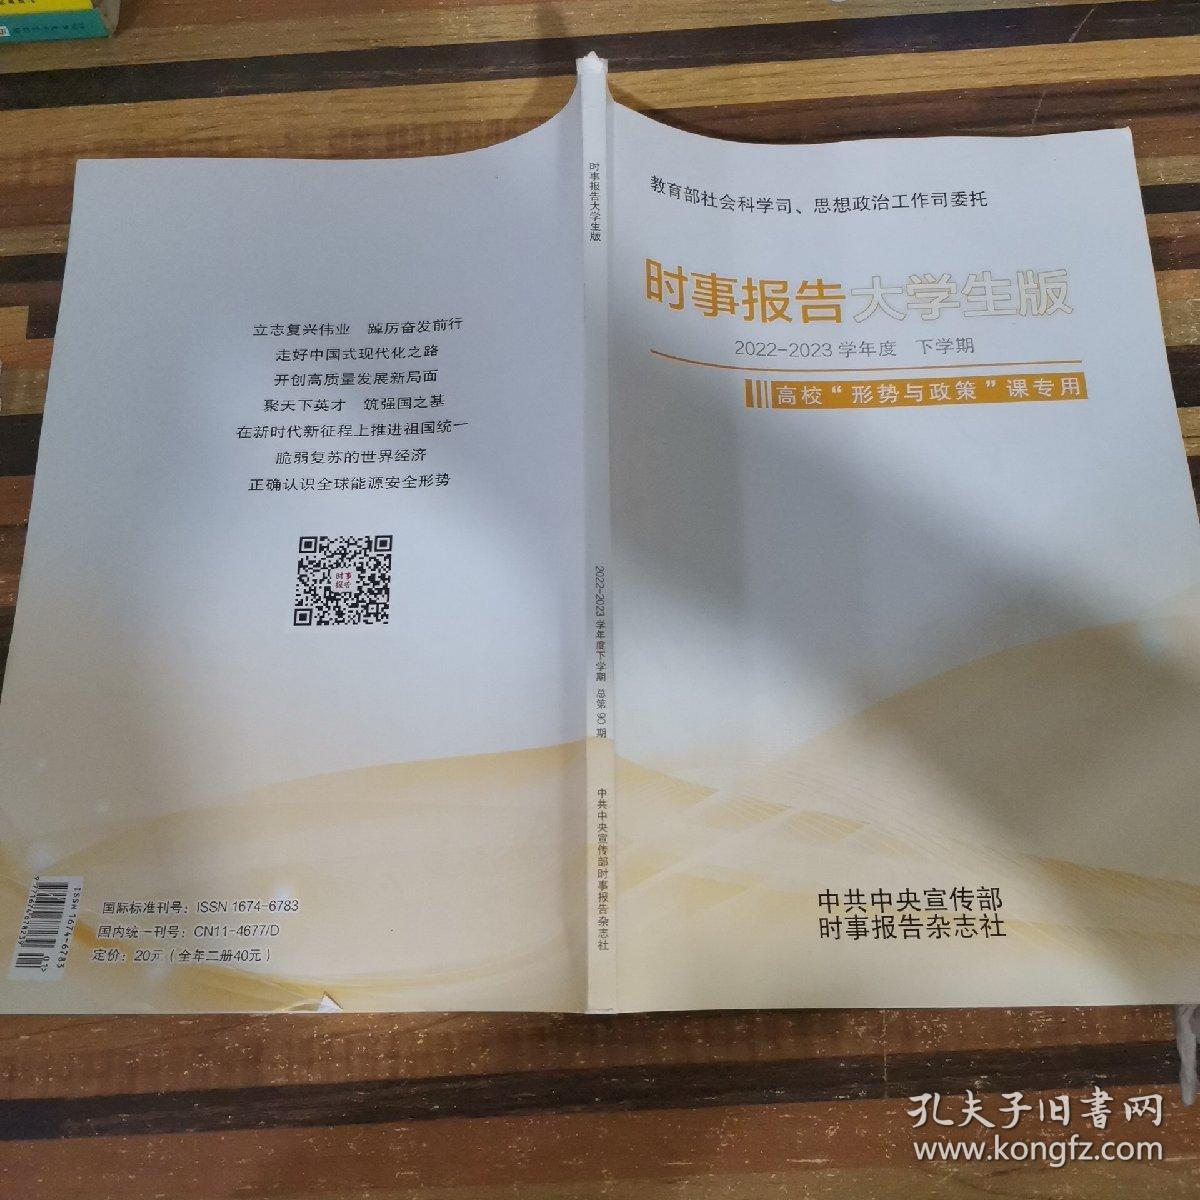 时事报告大学生版 2022-2023学年度 上学期 时事报告杂志社 - Taobao